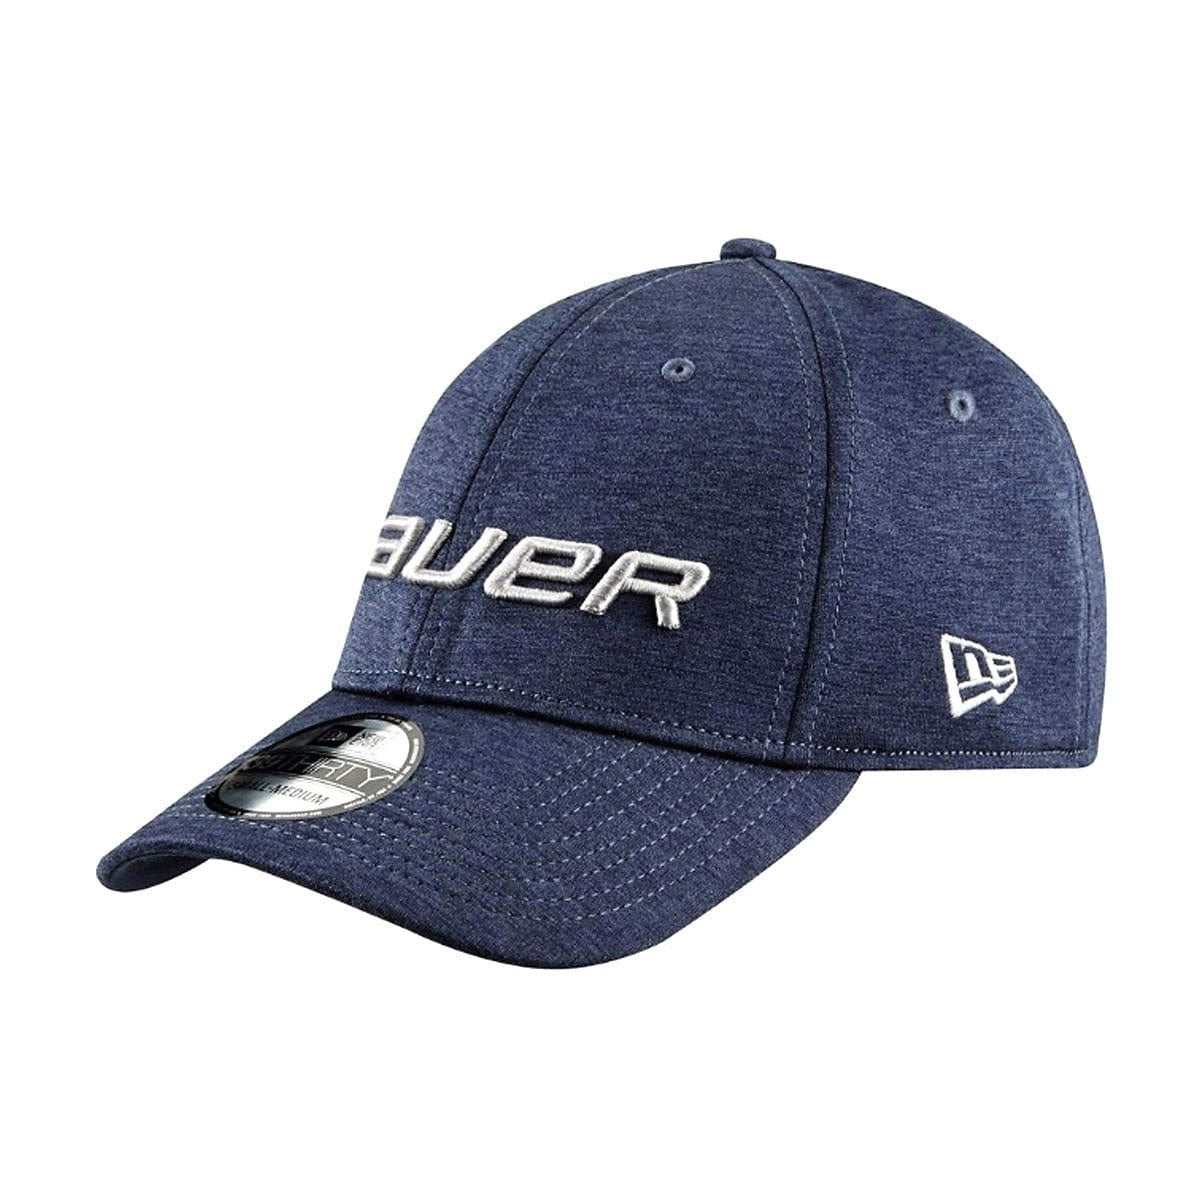 Bauer 39Thirty Flexfit Hat